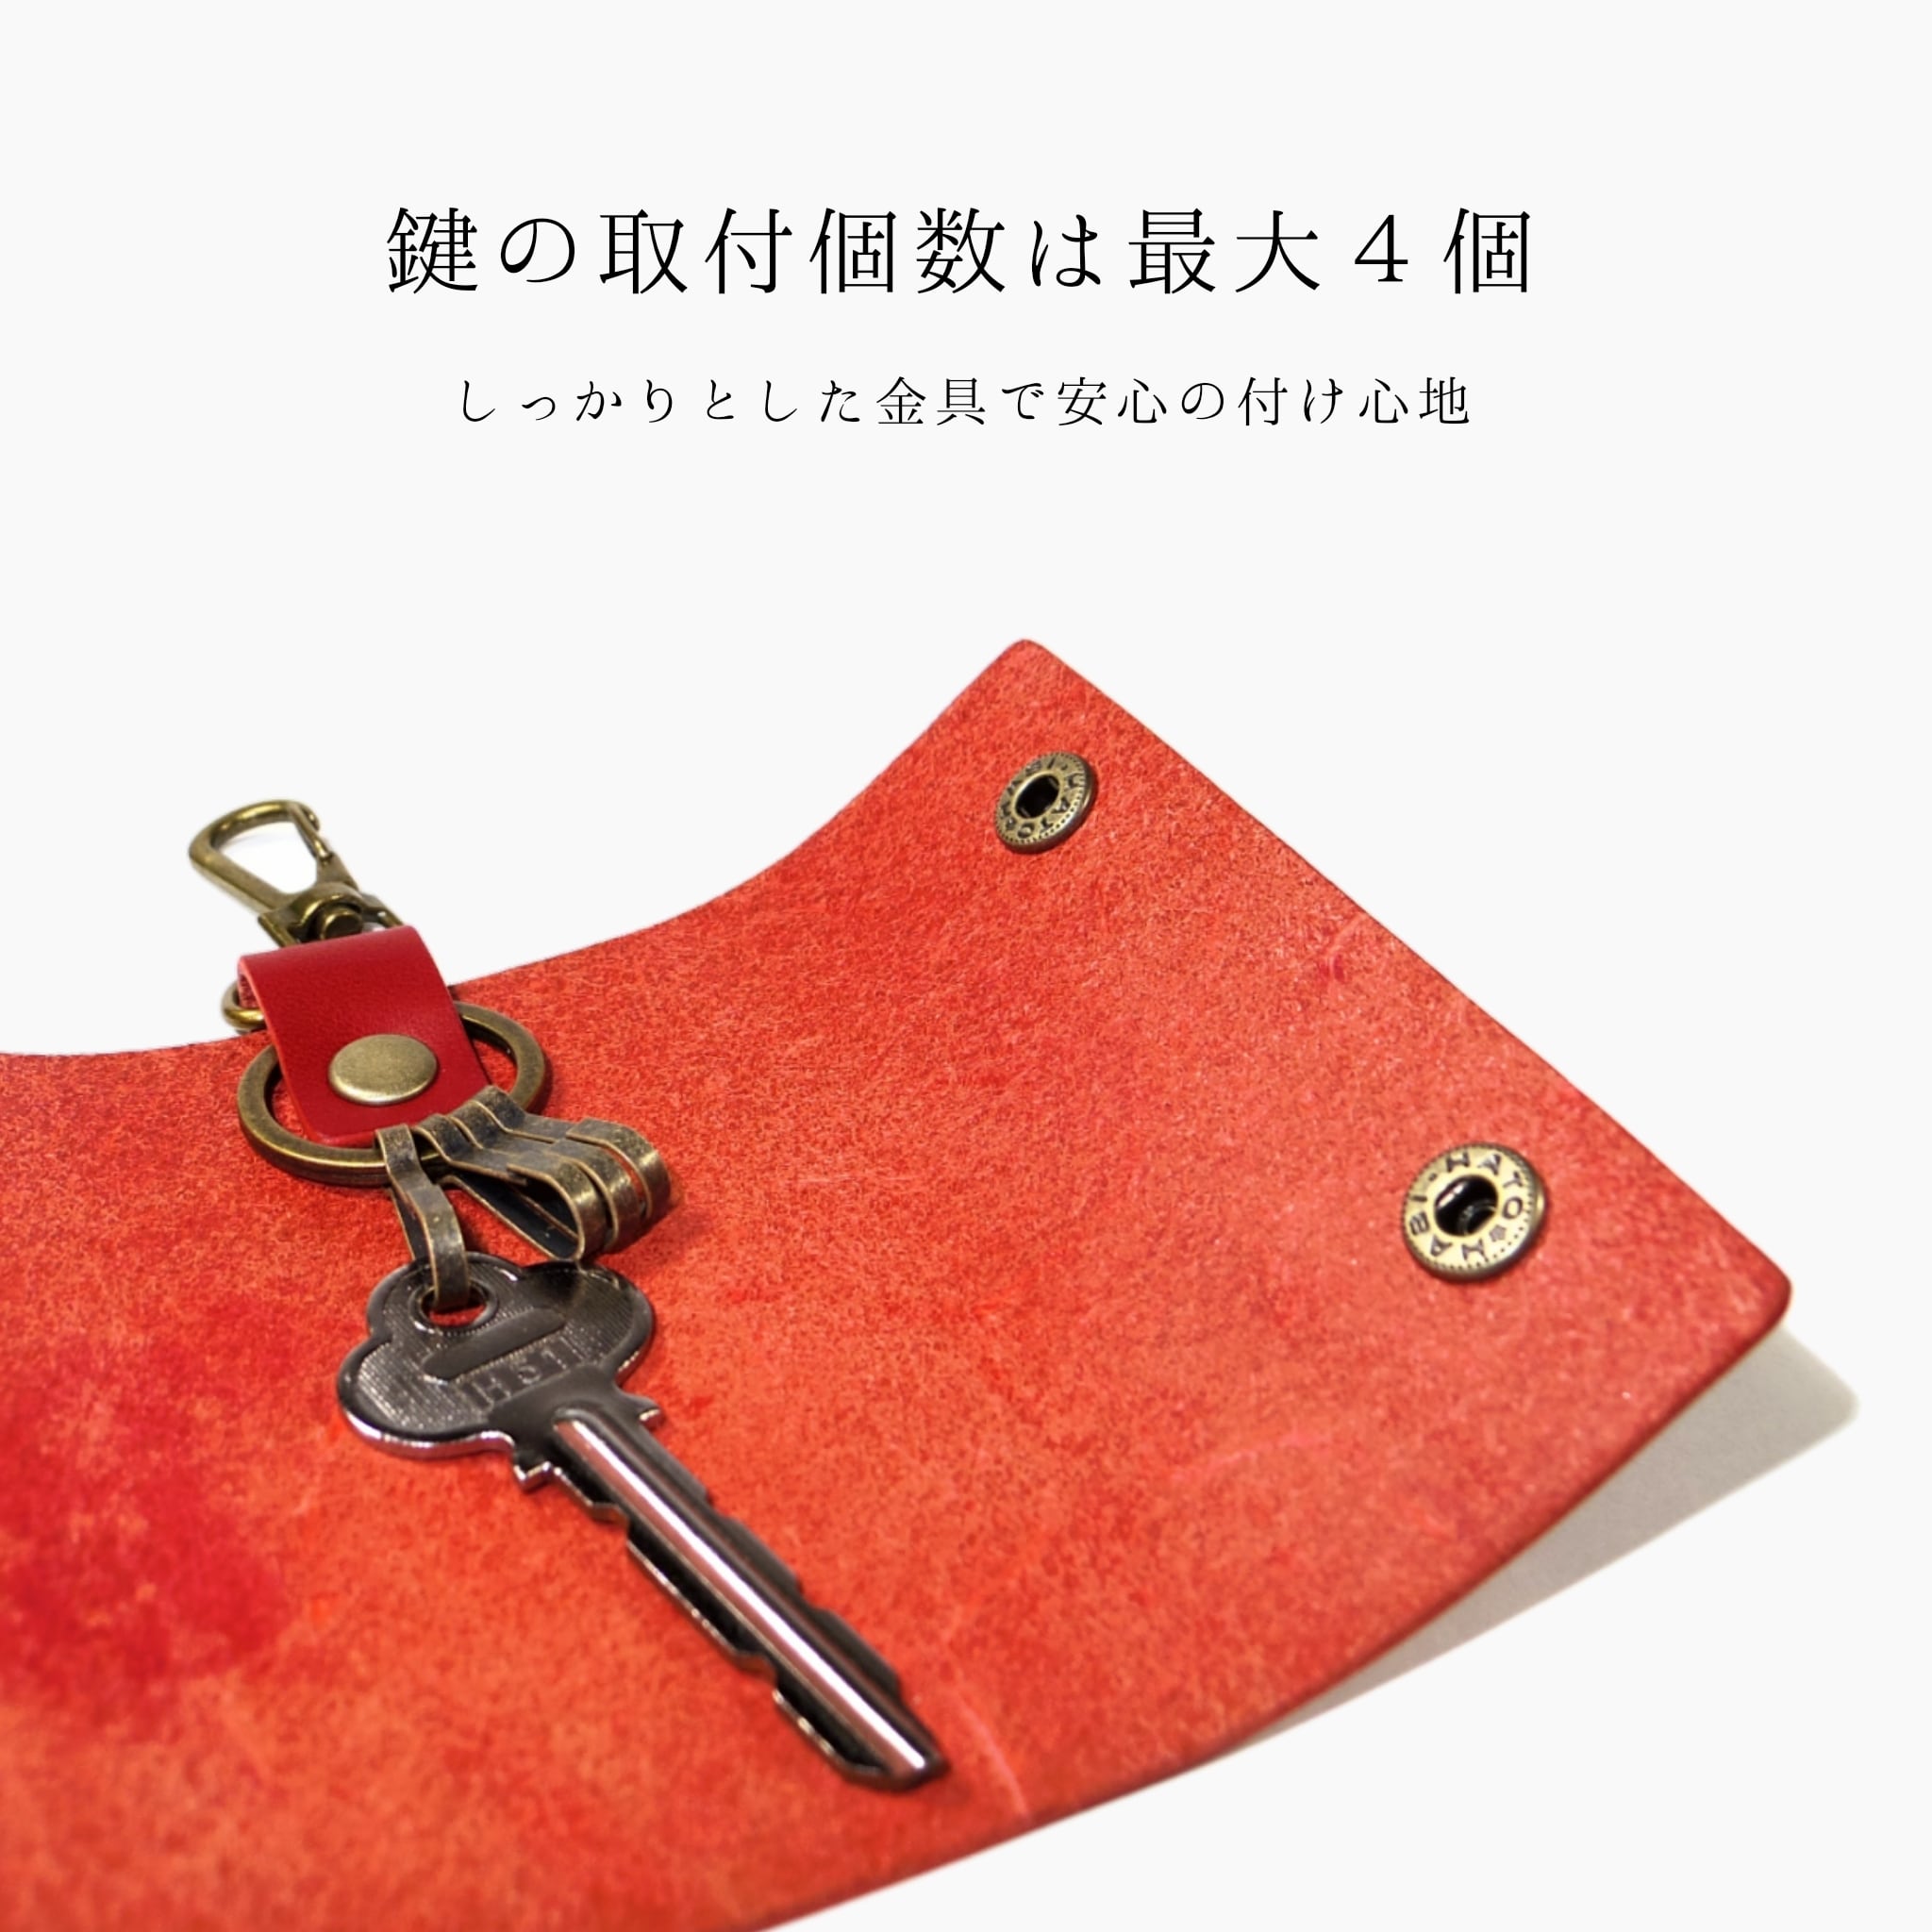 レザーキーケース レッド 赤色 国産本革 ナスカン付き 鍵 シンプル